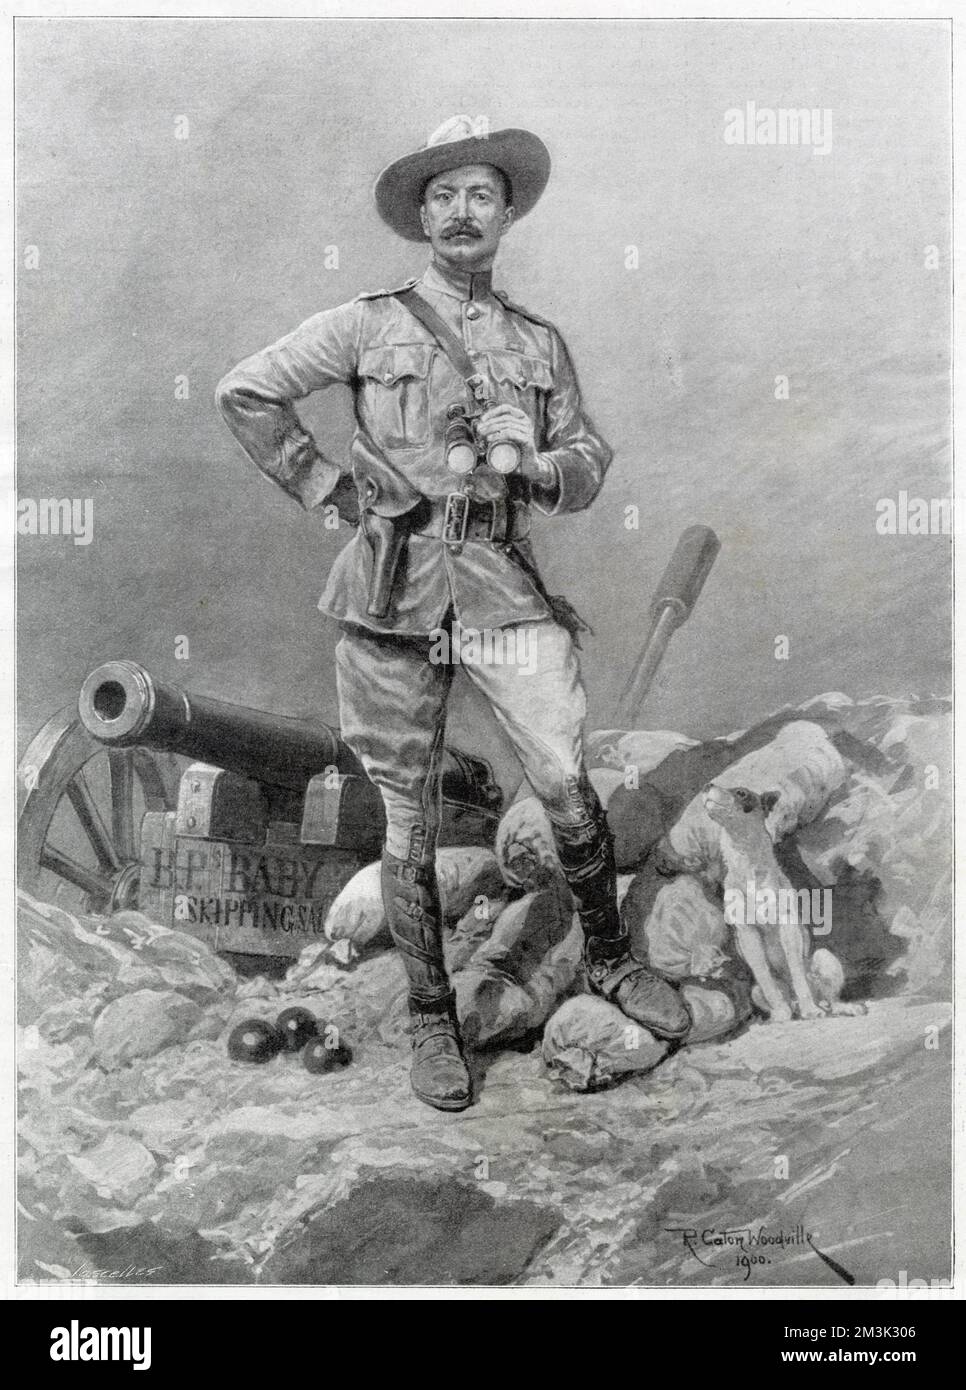 Robert Baden-Powell, 1st Baron Baden-Powell, soldat anglais et fondateur des Boy Scouts, photographié à Mafeking, Afrique du Sud. Banque D'Images